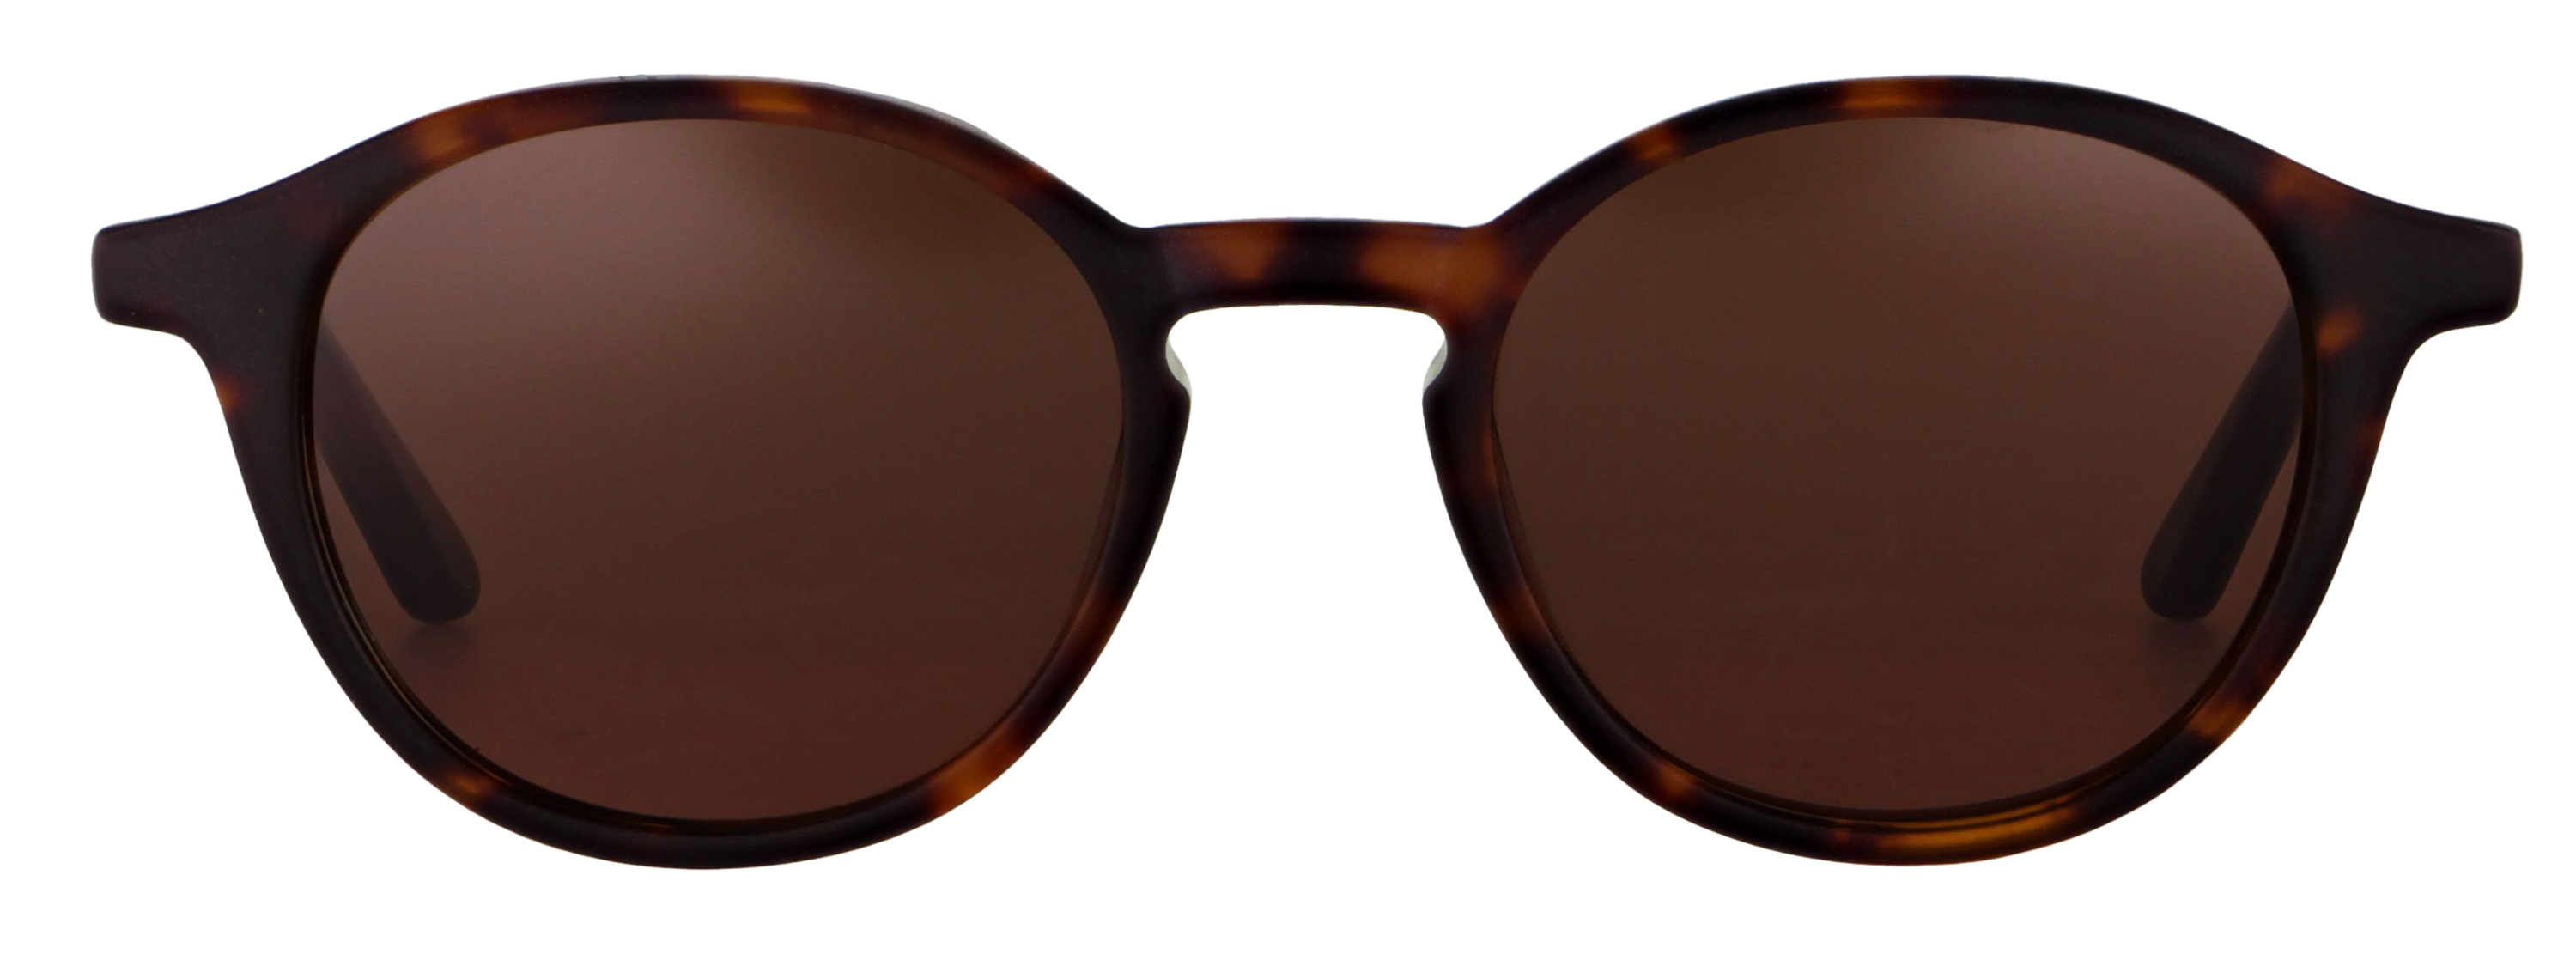 Das Bild zeigt die Sonnenbrille 718751 von der Marke Abele Optik in havanna matt.